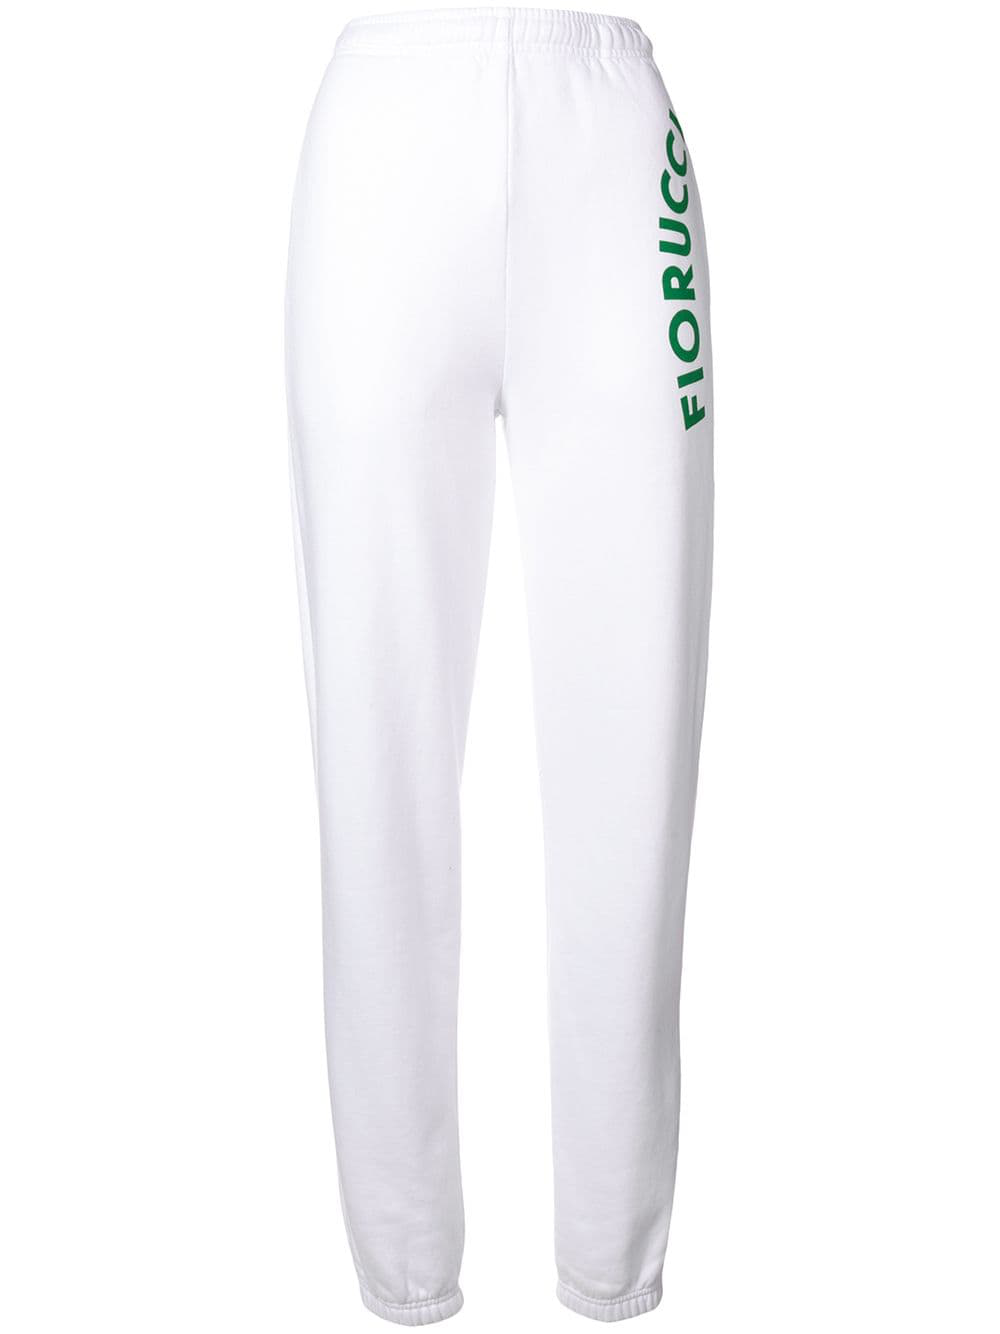 Fiorucci Equipe Track Pants - White 